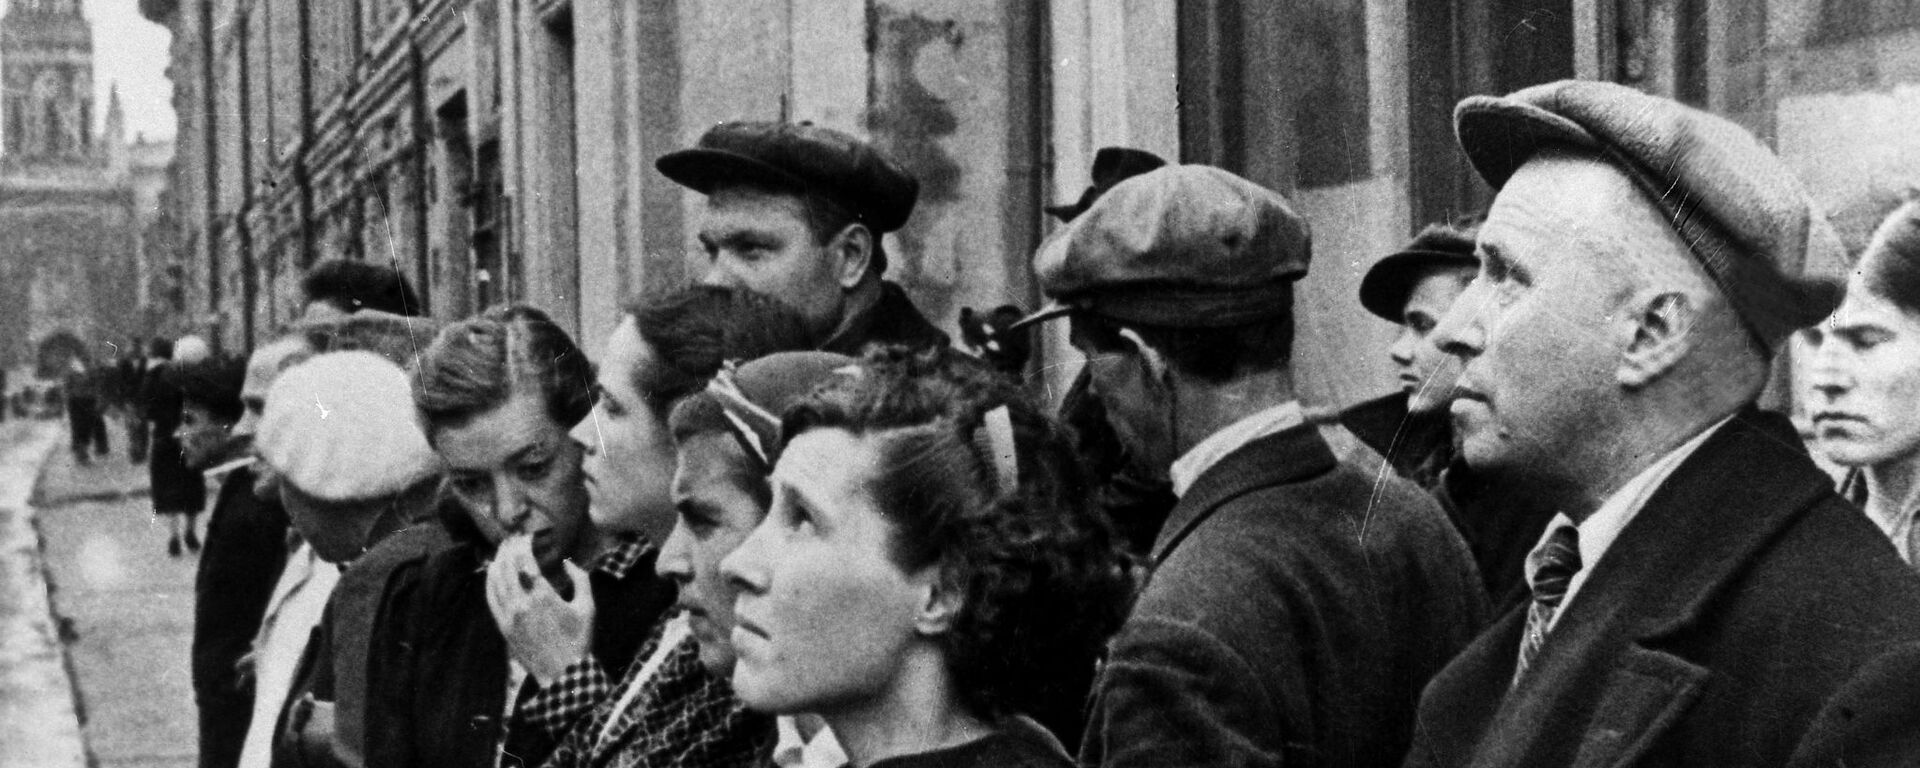 Maskavas iedzīvotāji klausās paziņojumu par kara sākšanu 1941. gada 22. jūnijs - Sputnik Latvija, 1920, 22.06.2021